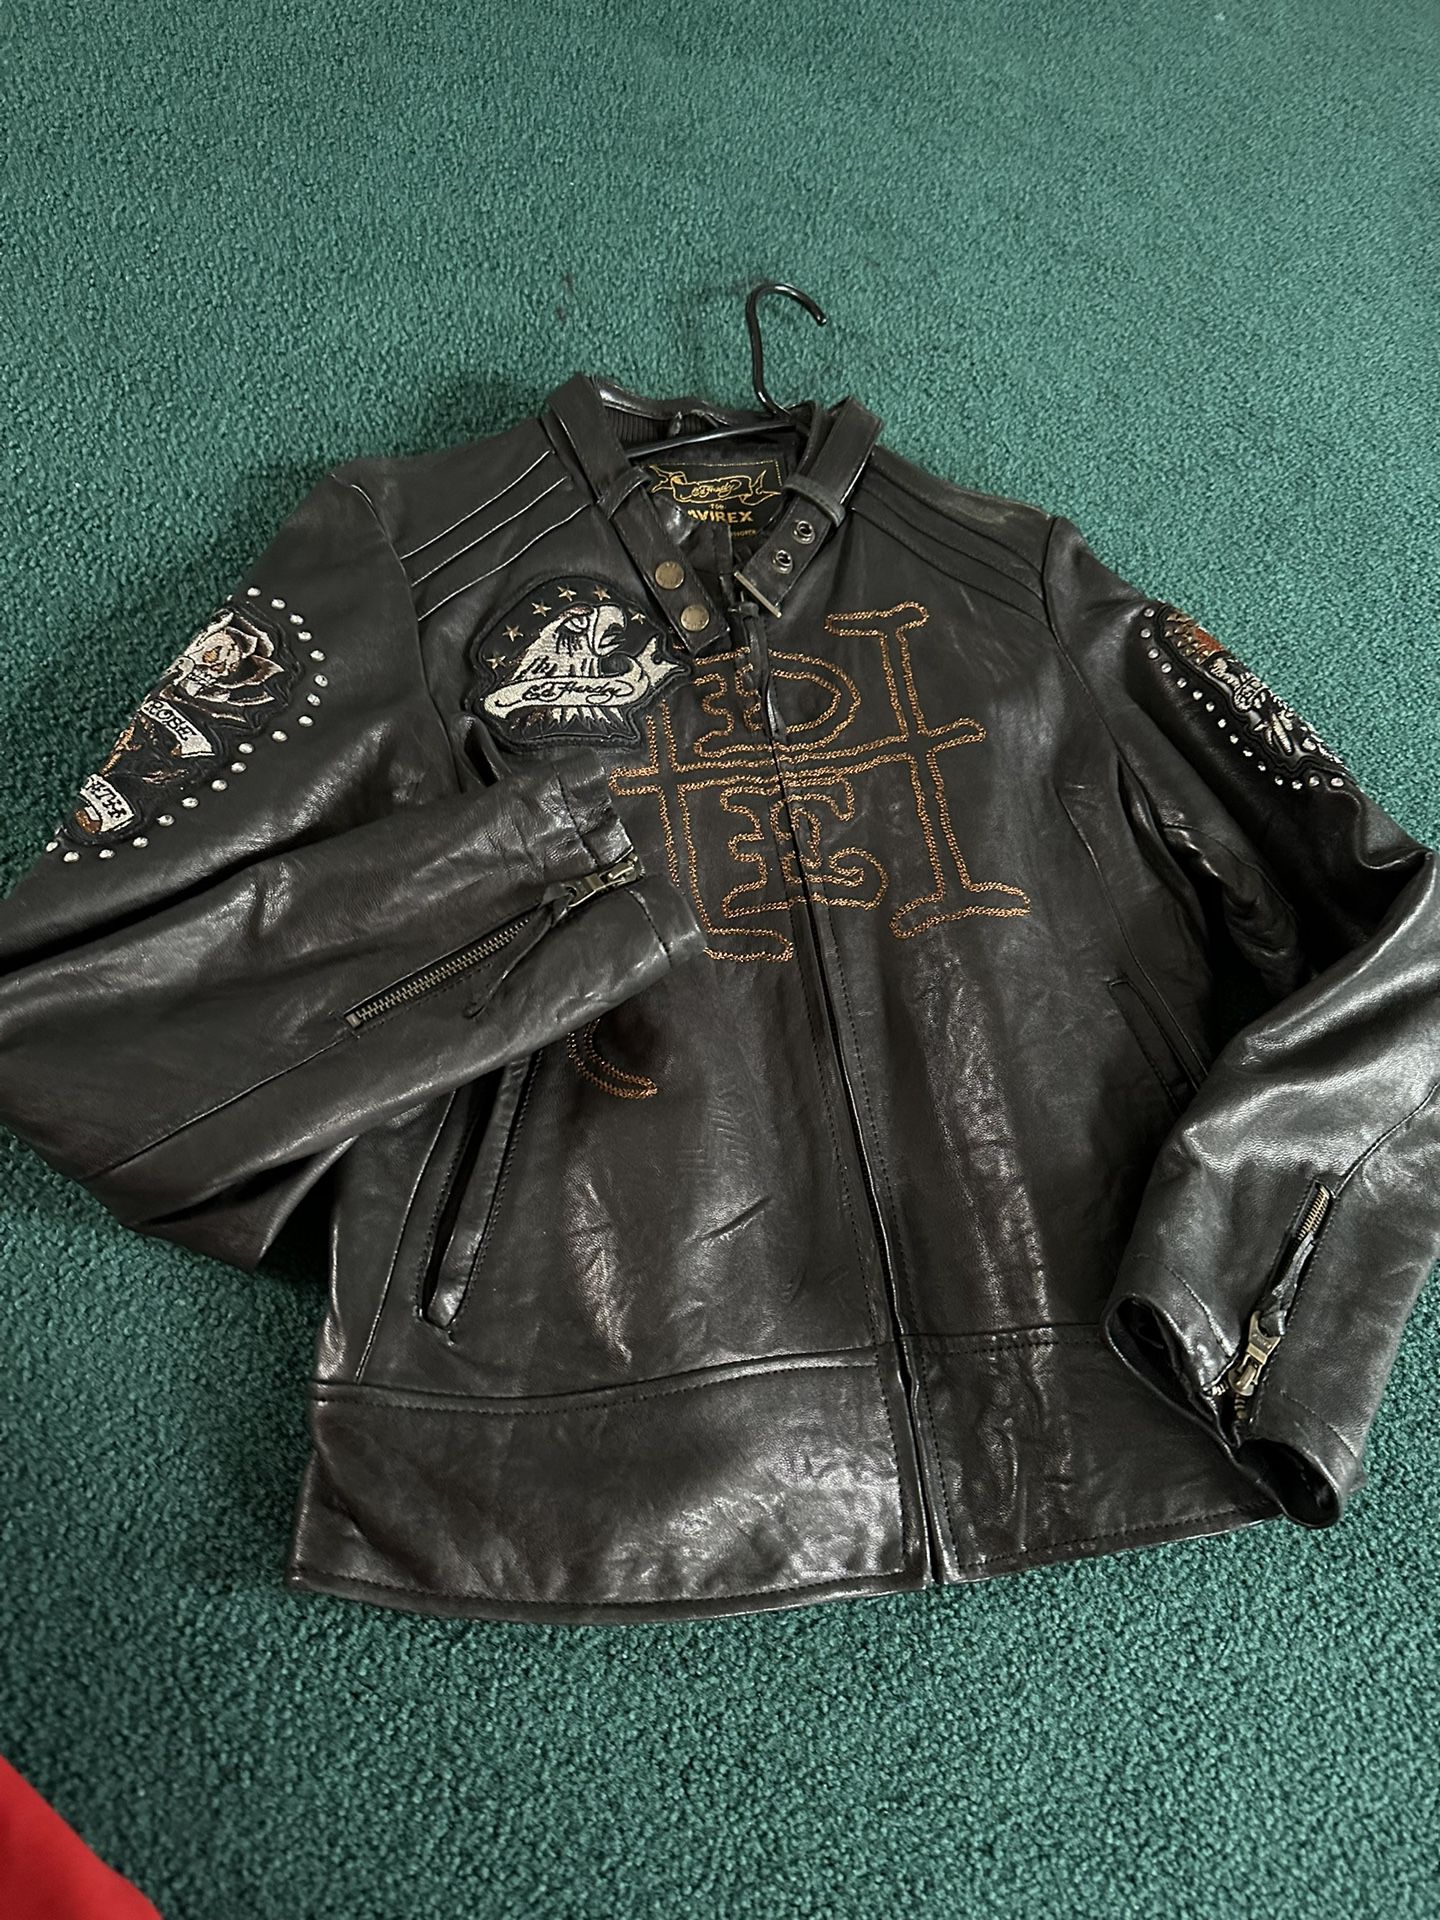 Ed Hardy For Avirex Leather Jacket